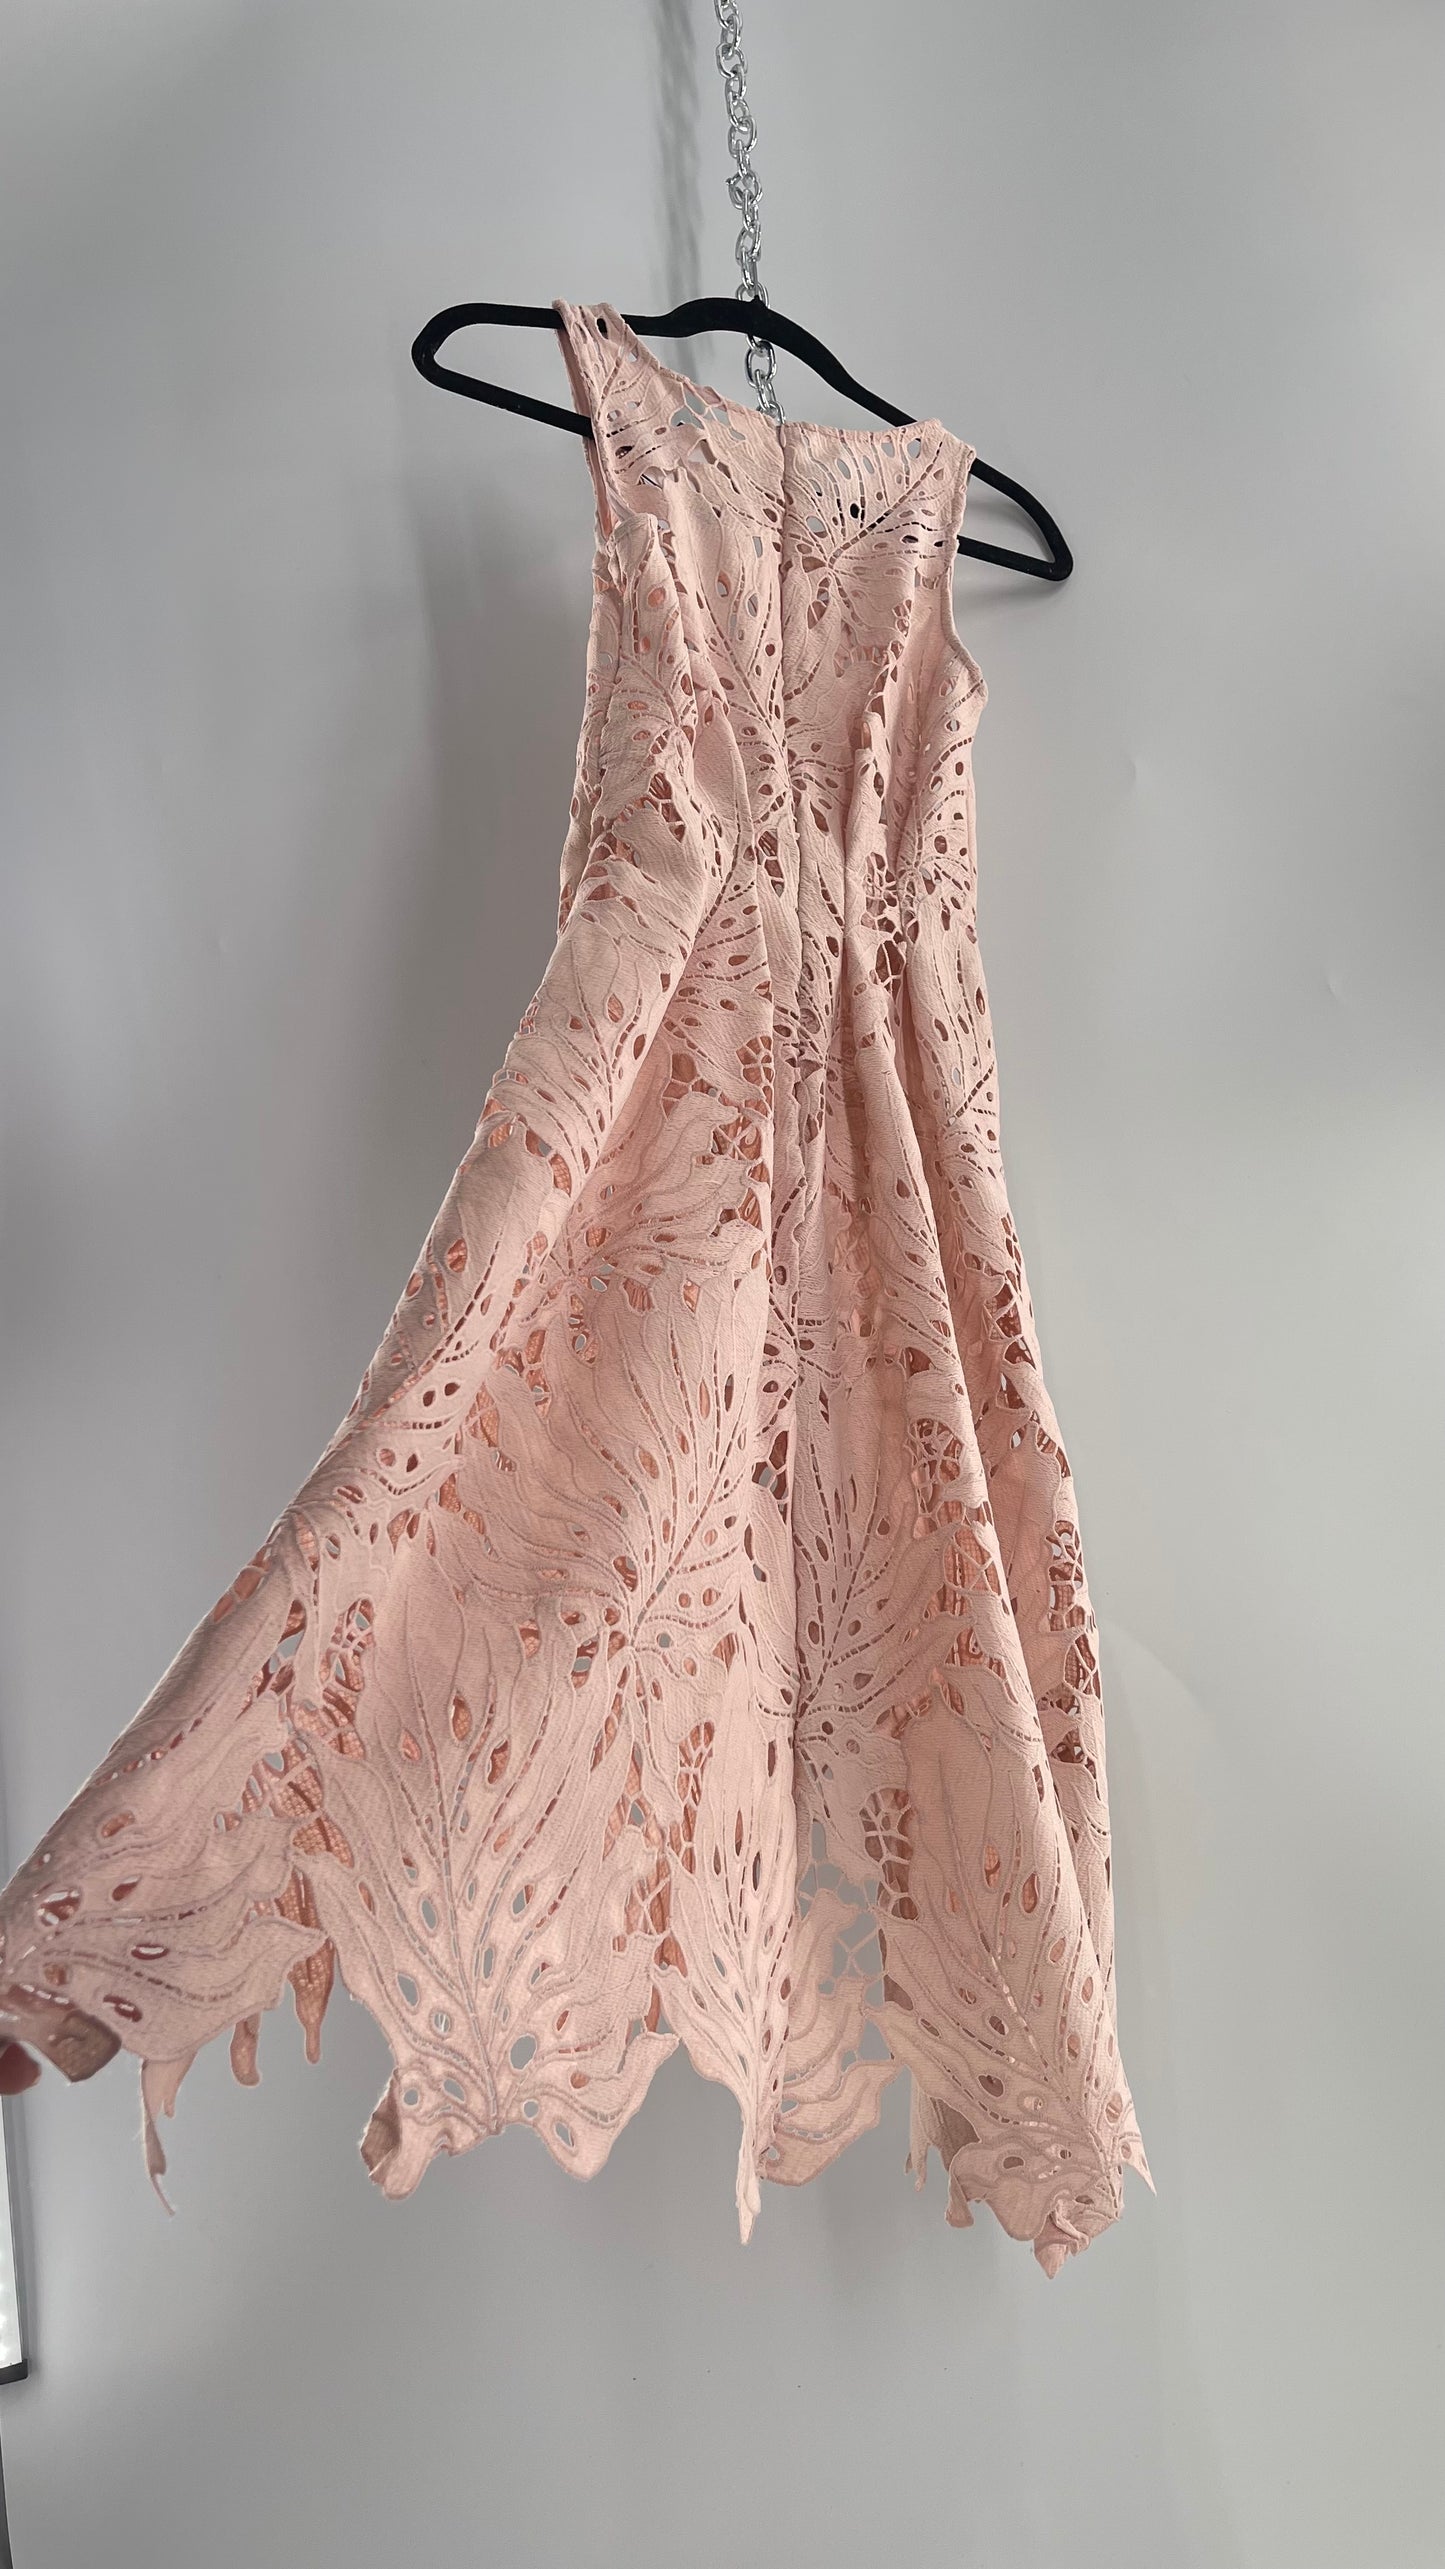 Anthropologie Eva Franco Baby Pink Completely Laser Cut Lace Palm Leaf Knee High Dress (2)